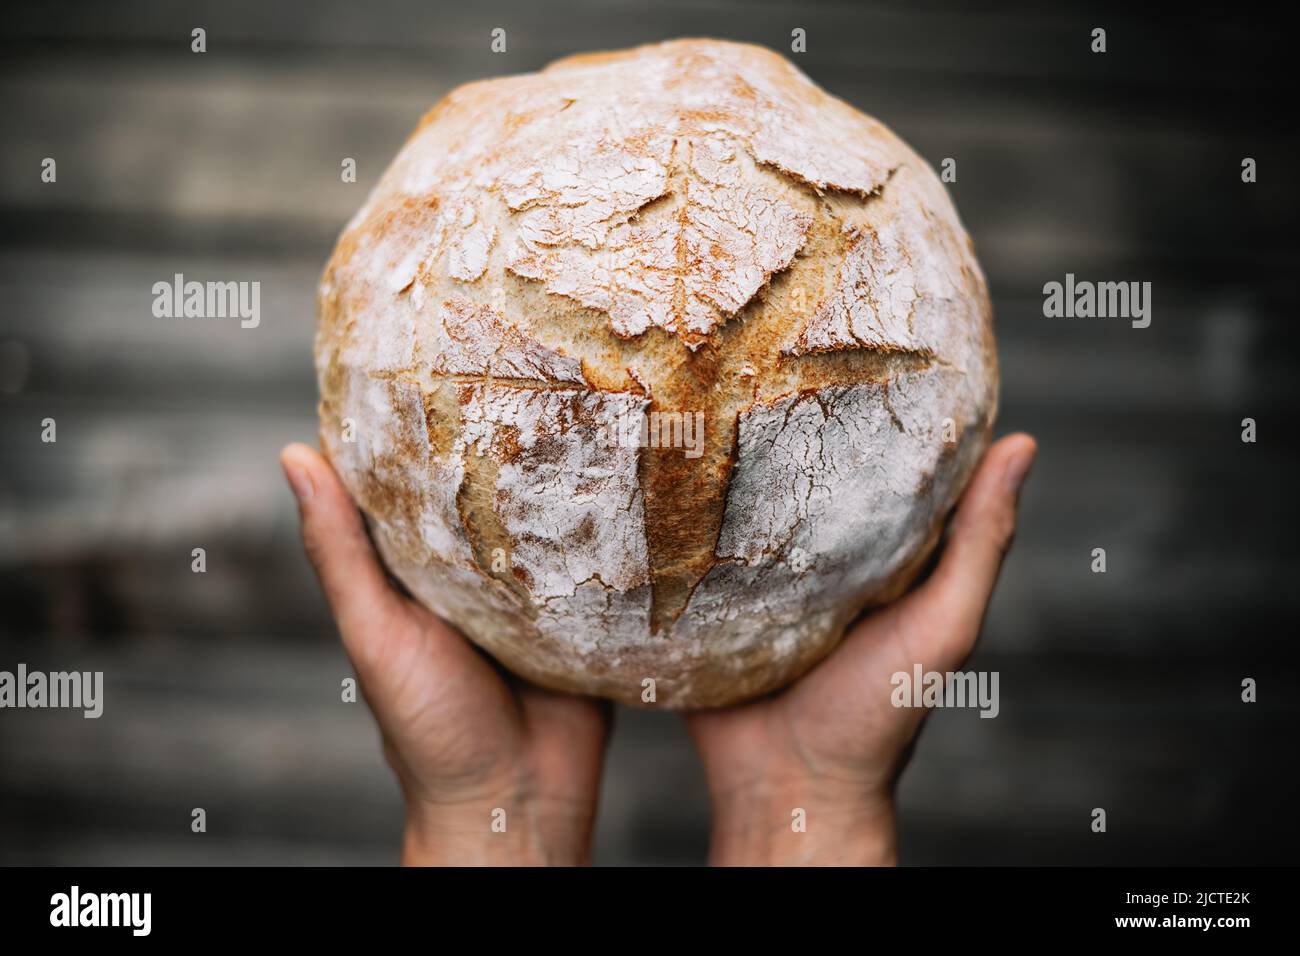 Pane tradizionale lievitato di pasta madre in panetteria mani su un rustico tavolo di legno. Fotografia alimentare sana Foto Stock